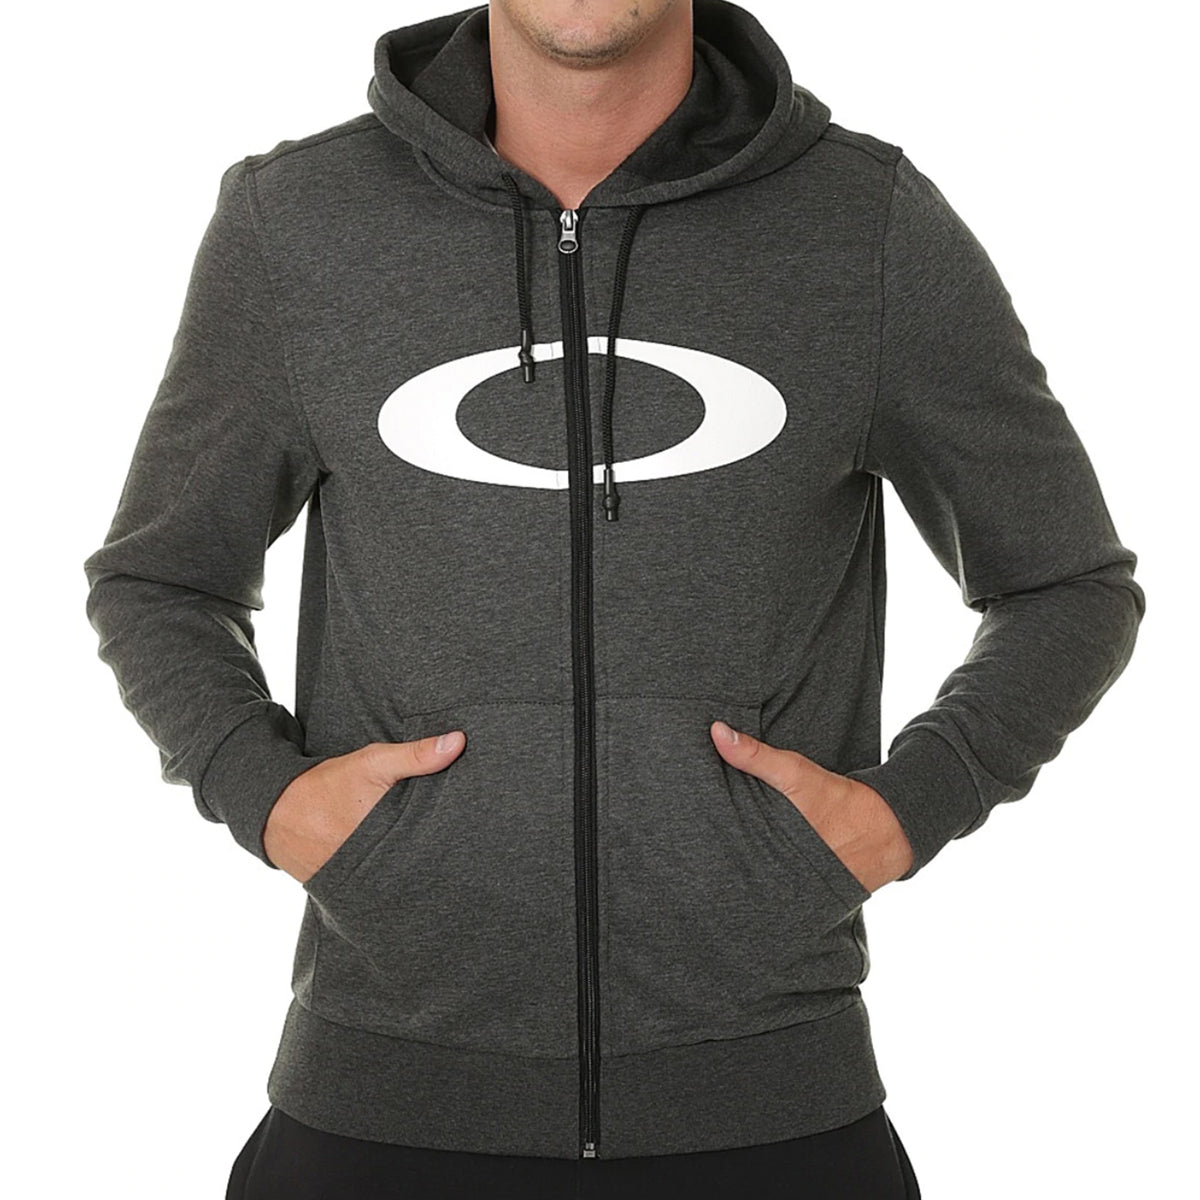 oakley ellipse hoodie